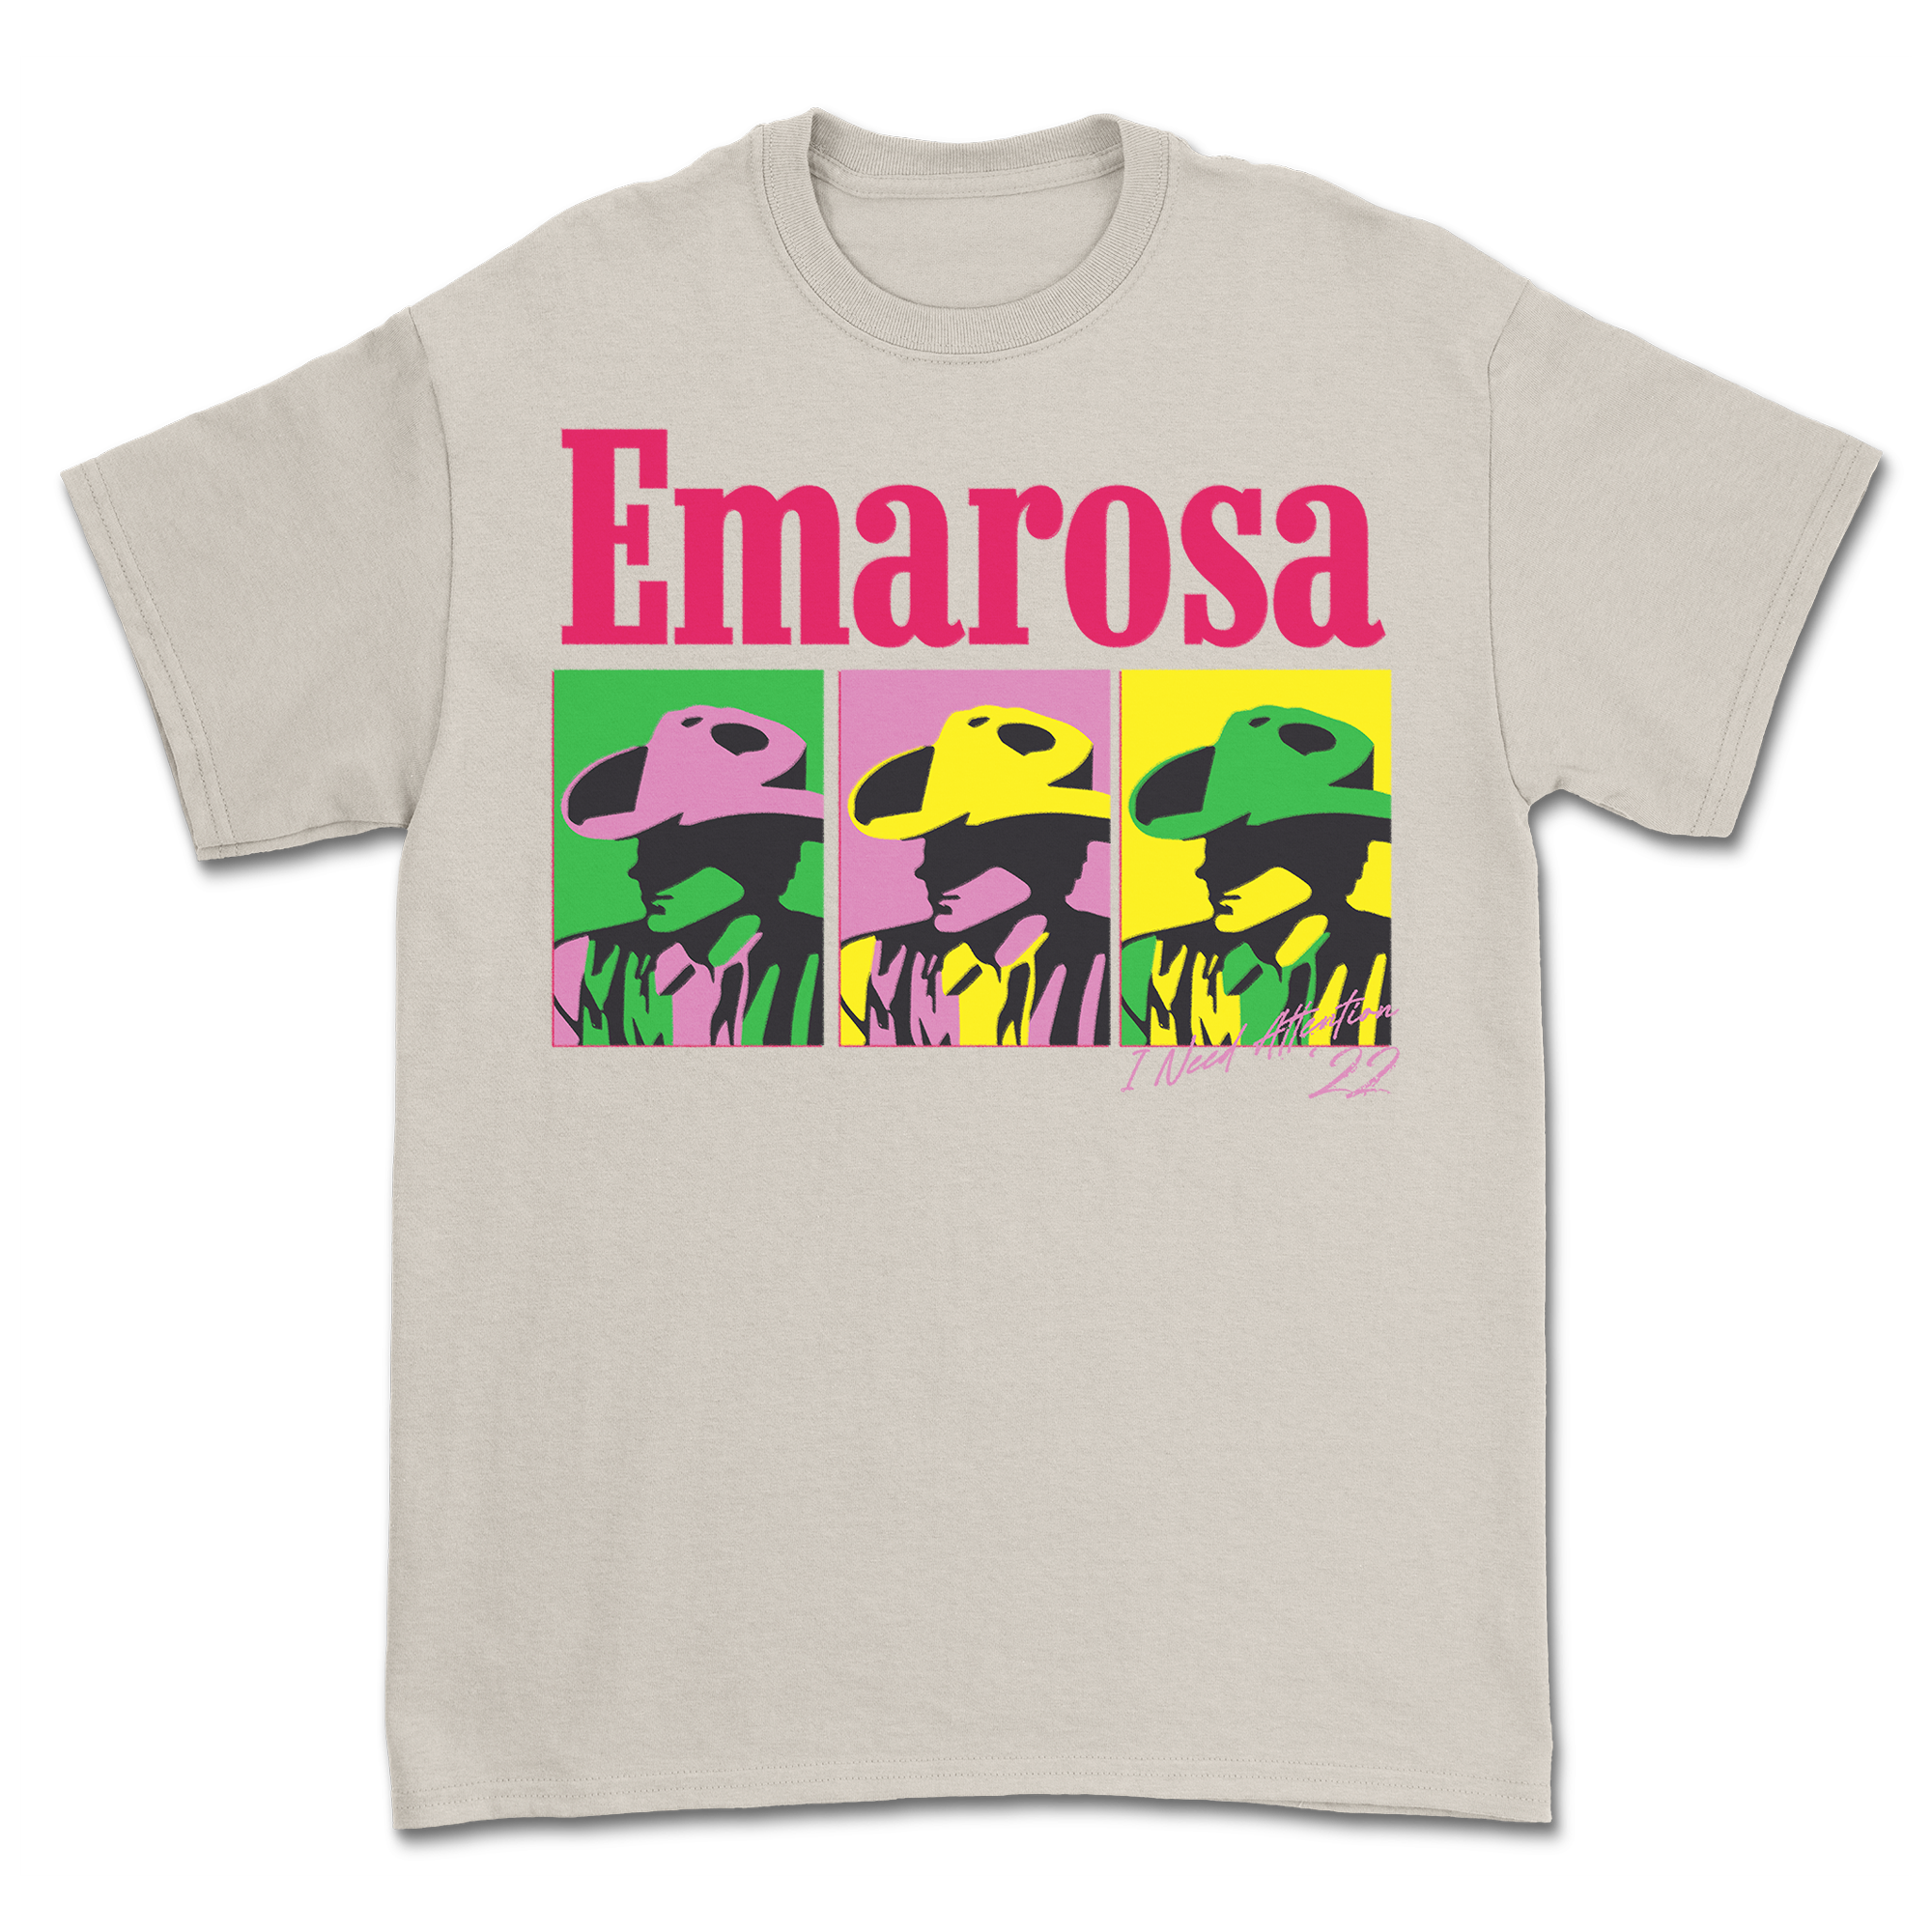 Emarosa - Cowboy T-Shirt (Natural)